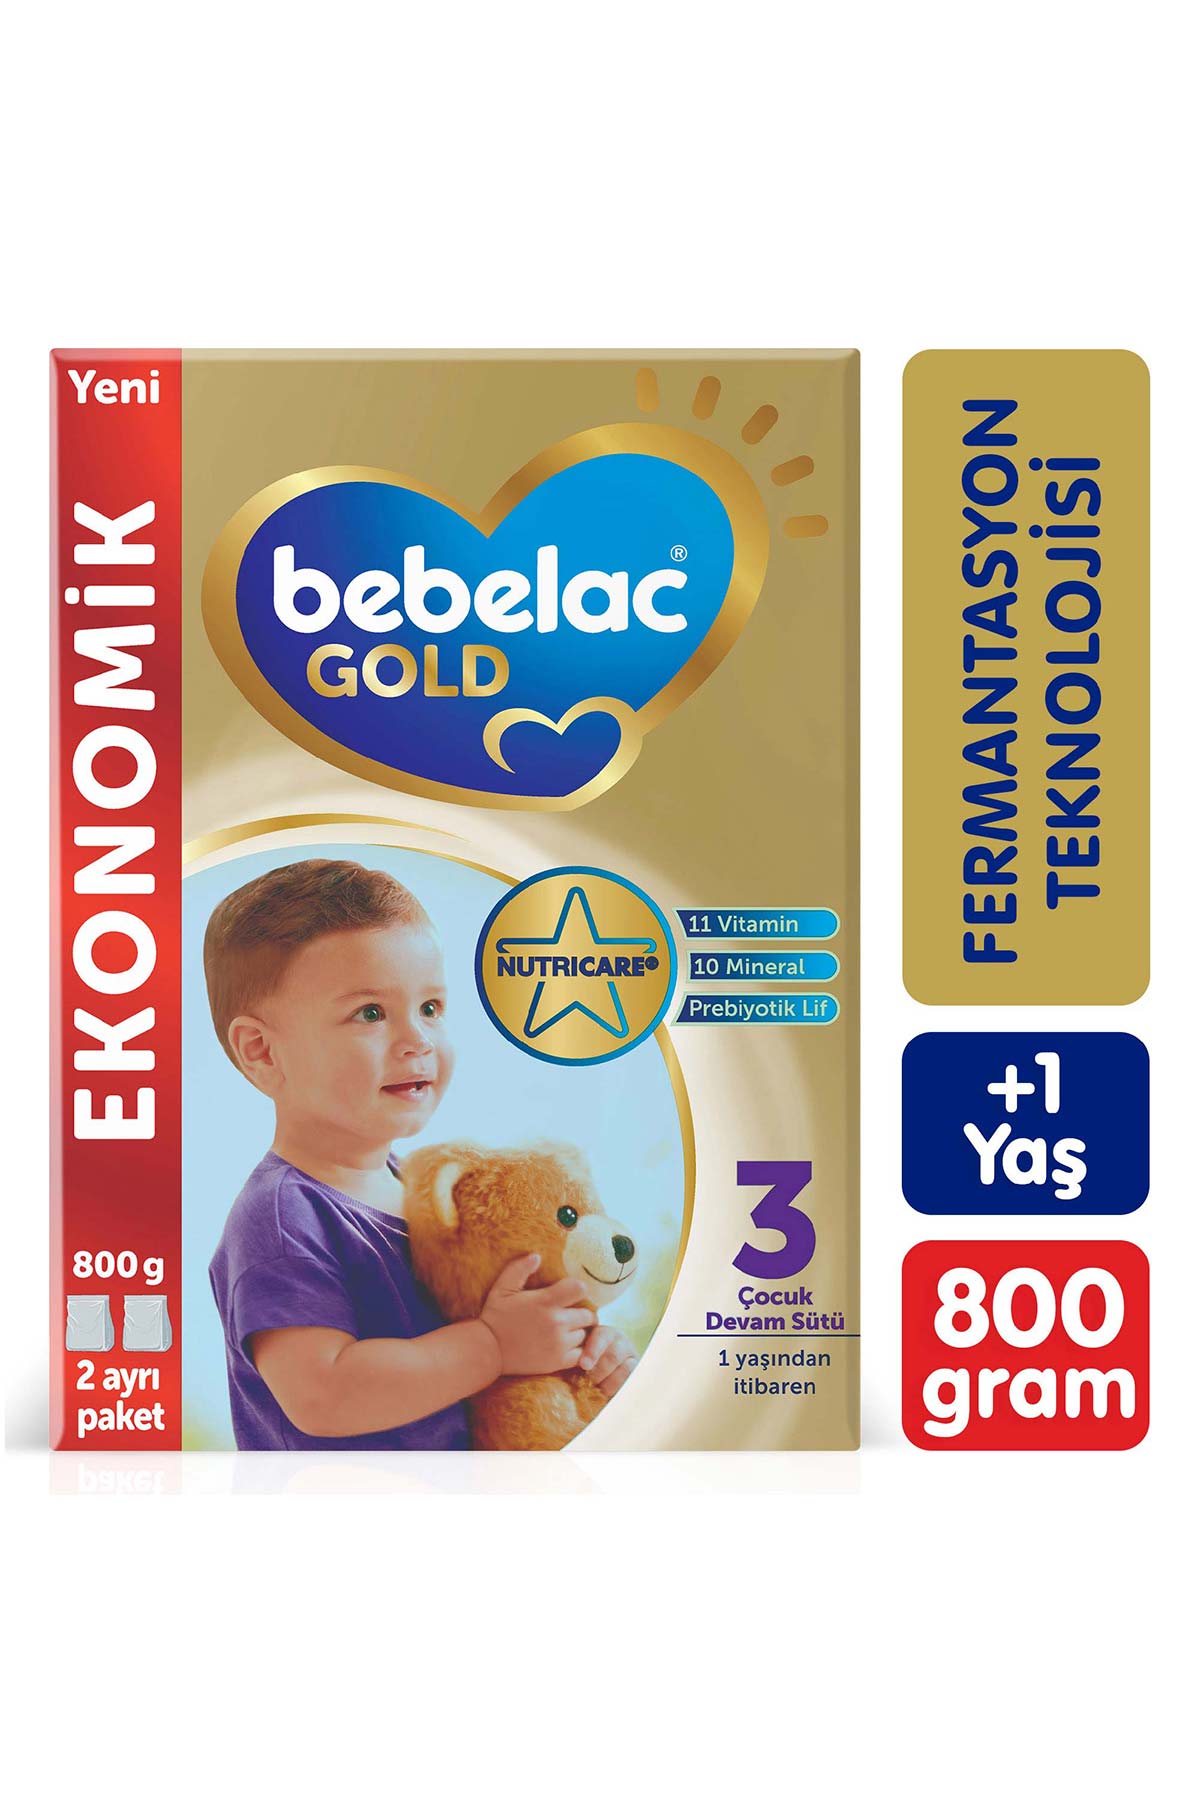 Bebelac Gold 3 Çocuk Devam Sütü 1 Yaş+ 800 G